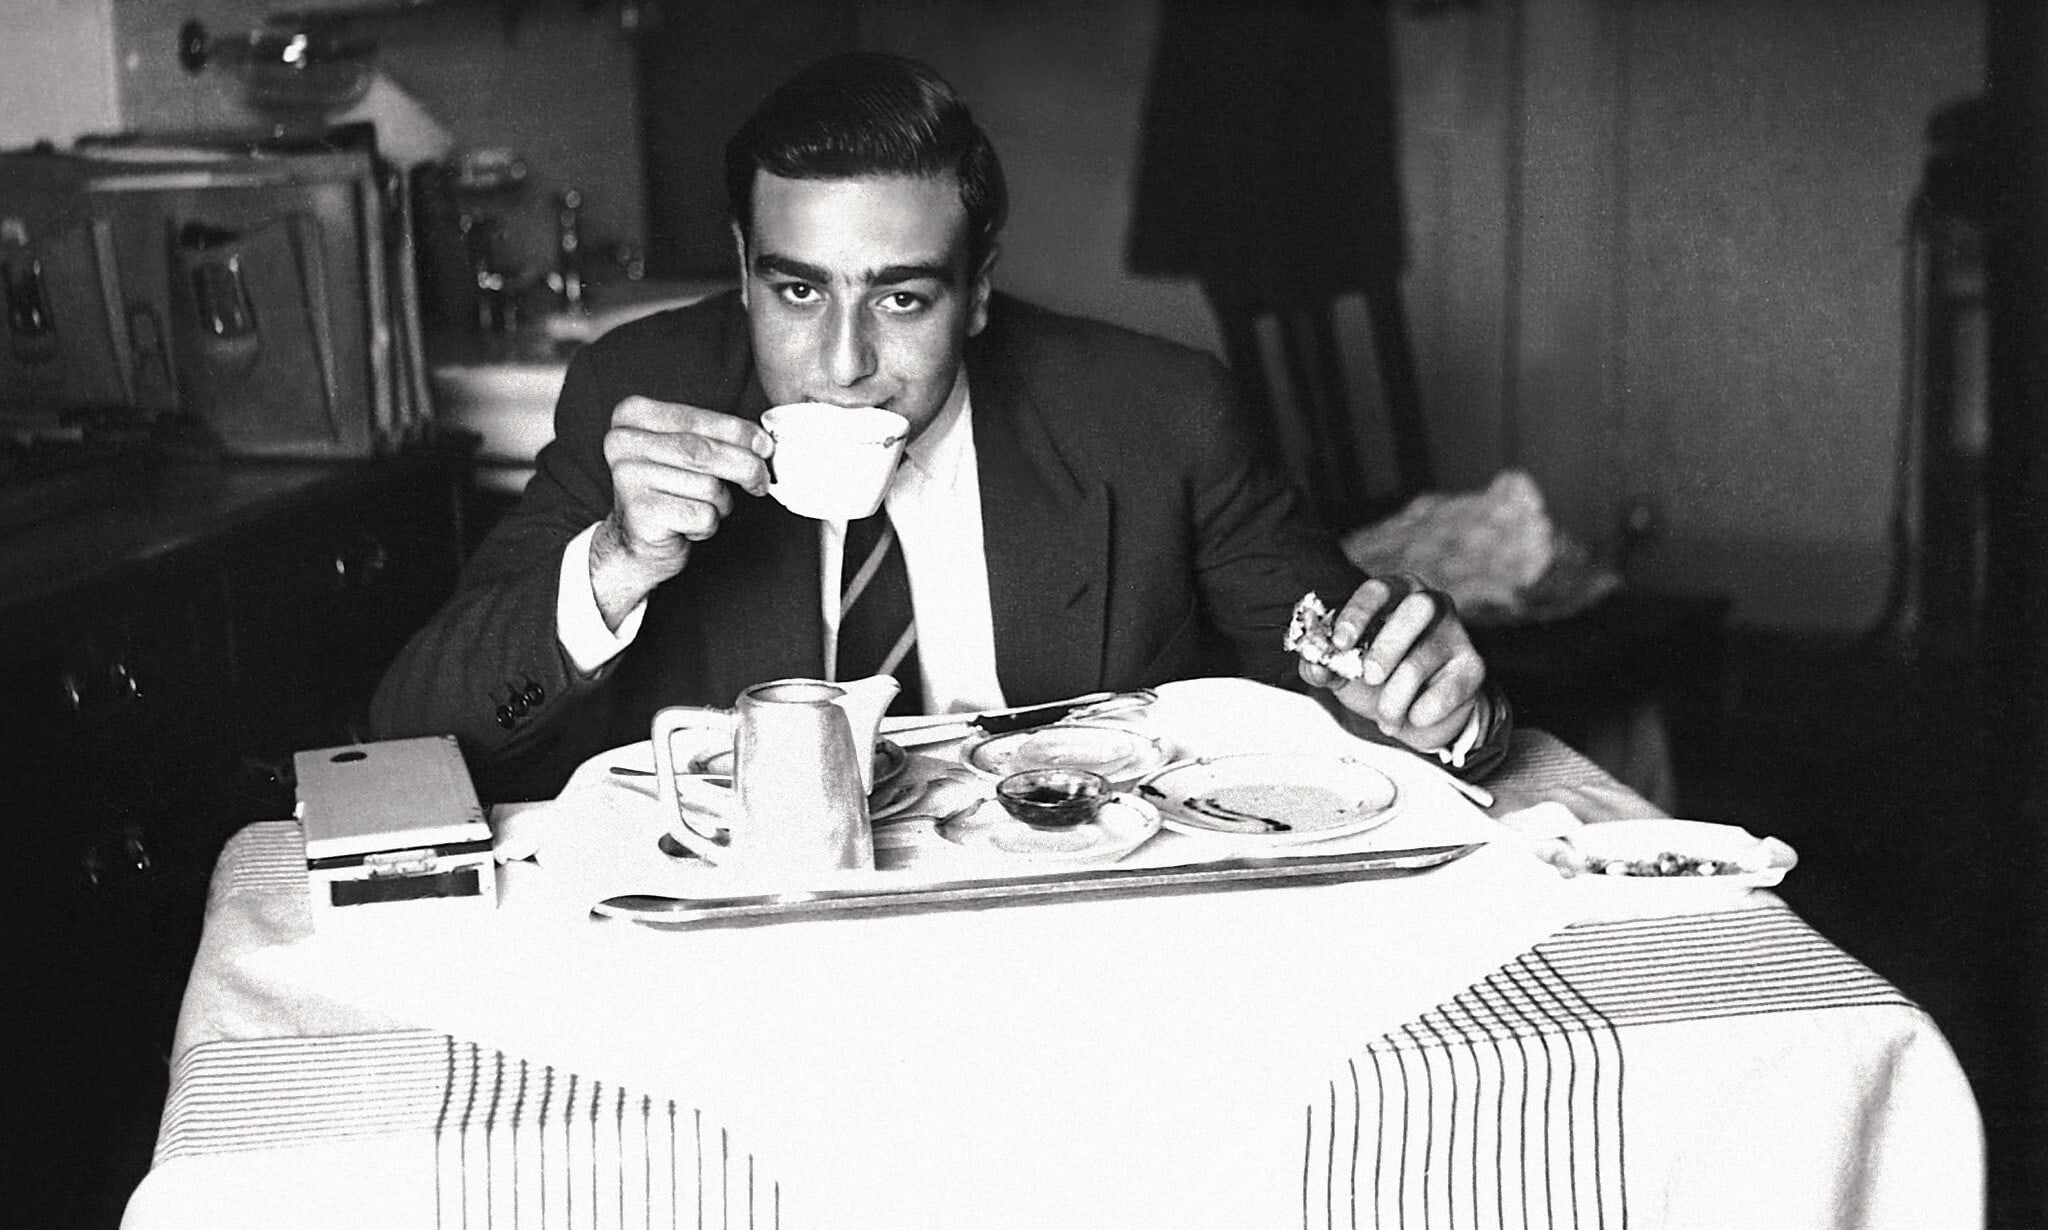 אדמונד יעקב ספרא בגיל 16, אוכל ארוחת בוקר בז'נווה, 1948 (צילום: קרן אדמונד ספרא)